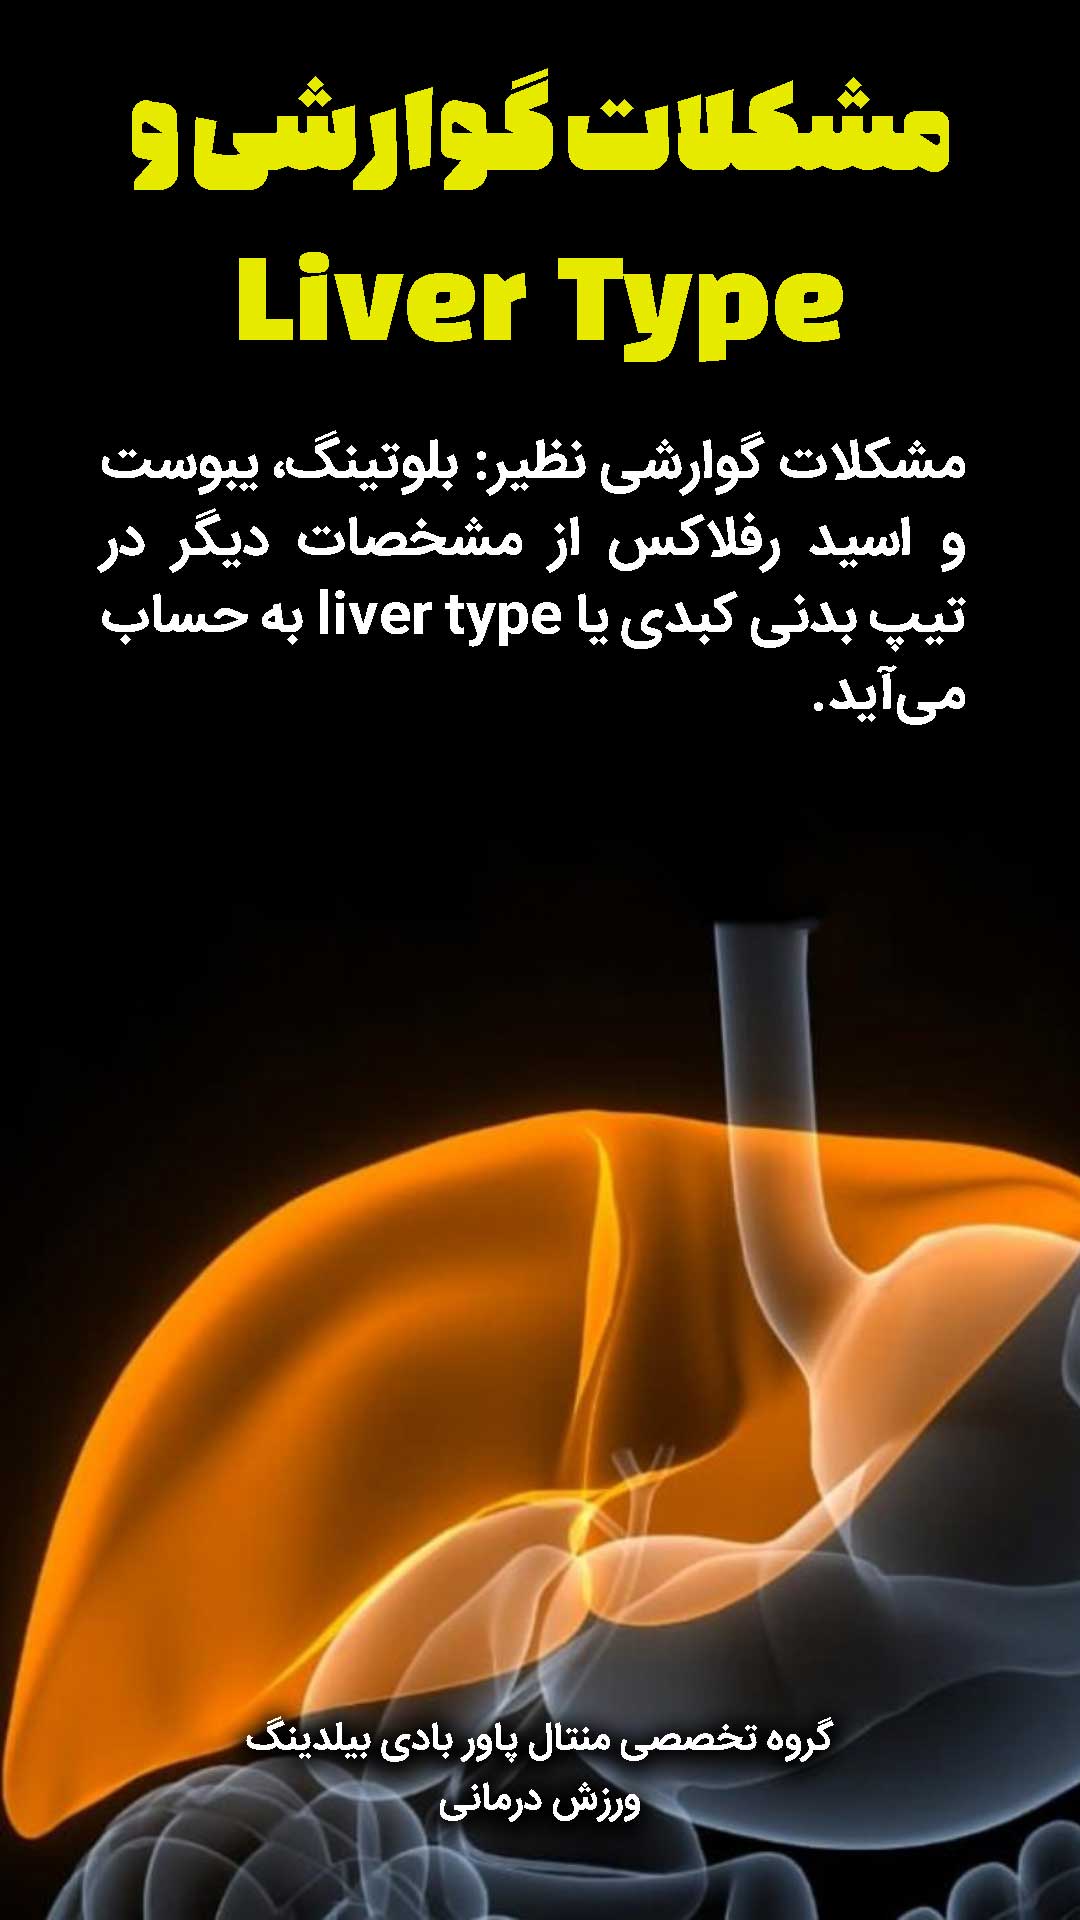 مشکلات گوارشی نظیر: بلوتینگ، یبوست و اسید رفلاکس از مشخصات دیگر در تیپ بدنی کبدی یا liver type به حساب می‌آید.